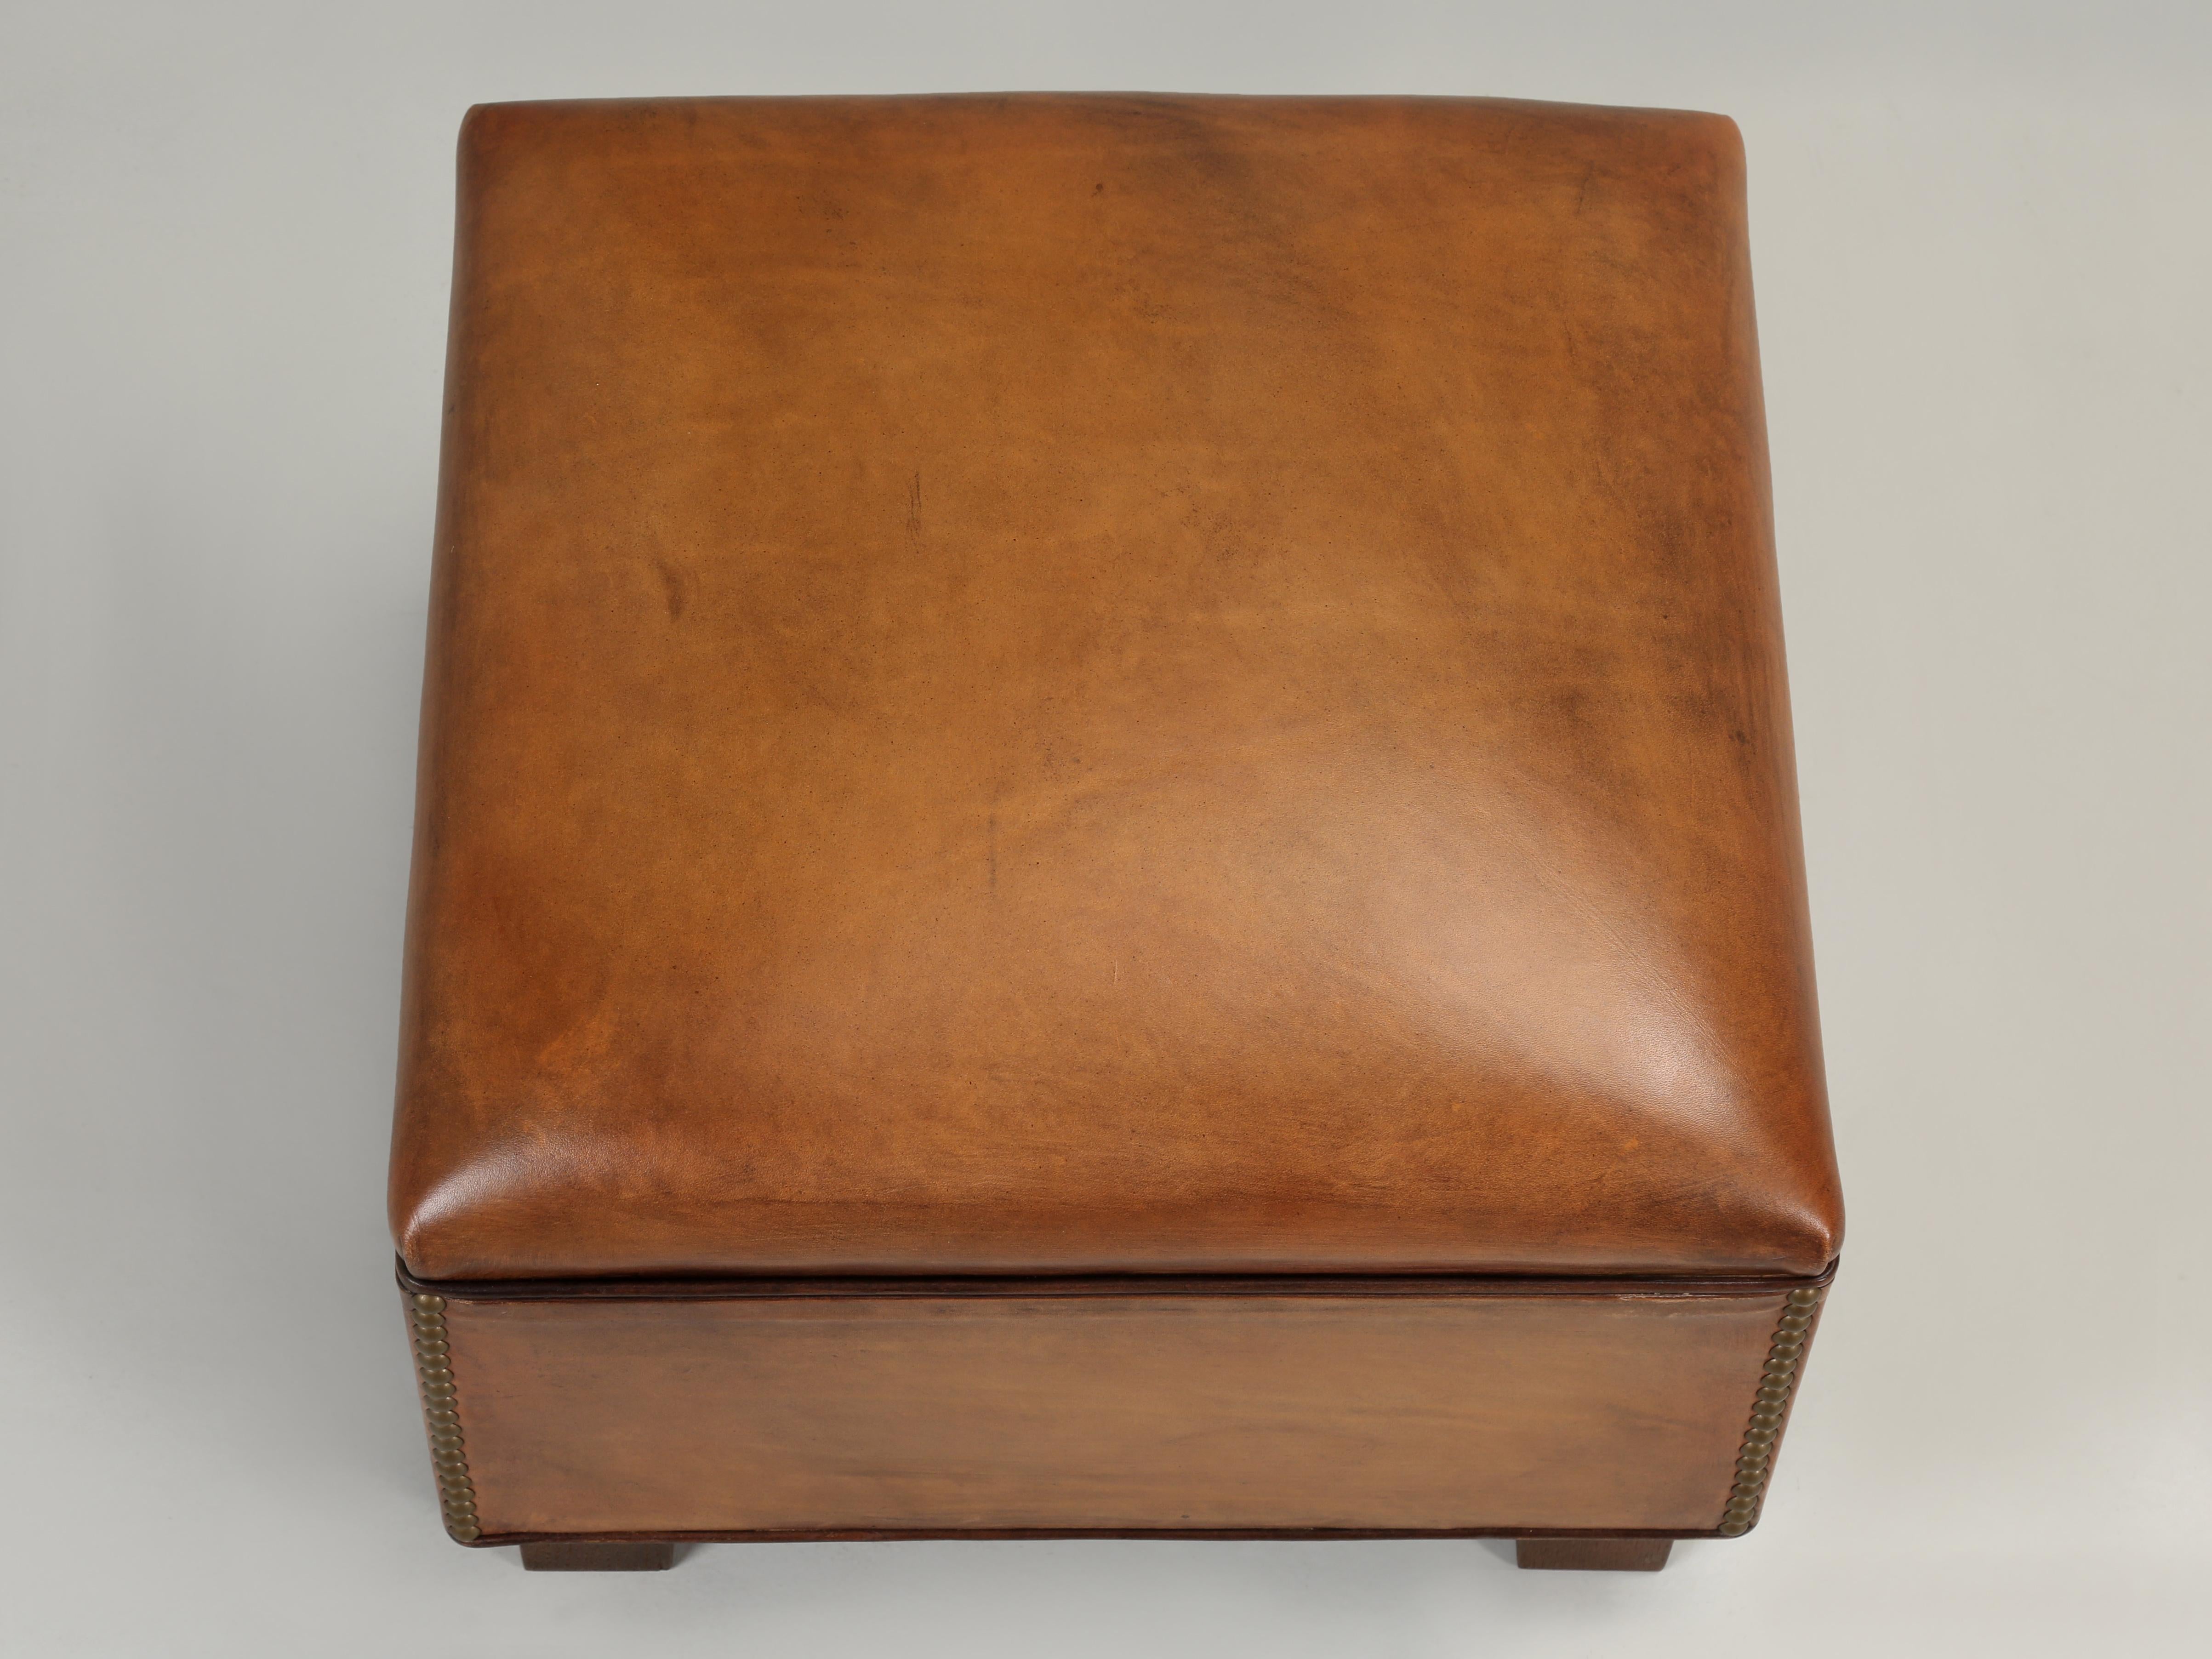 Ottoman, Custom Made inhouse zu kombinieren mit Französisch Leder Club Chairs oder was auch immer. Erhältlich in unendlich vielen Farben, Stoffen und natürlich in jeder Größe. Normalerweise sehen Sie diese Leder-Ottomanen mit passenden französischen